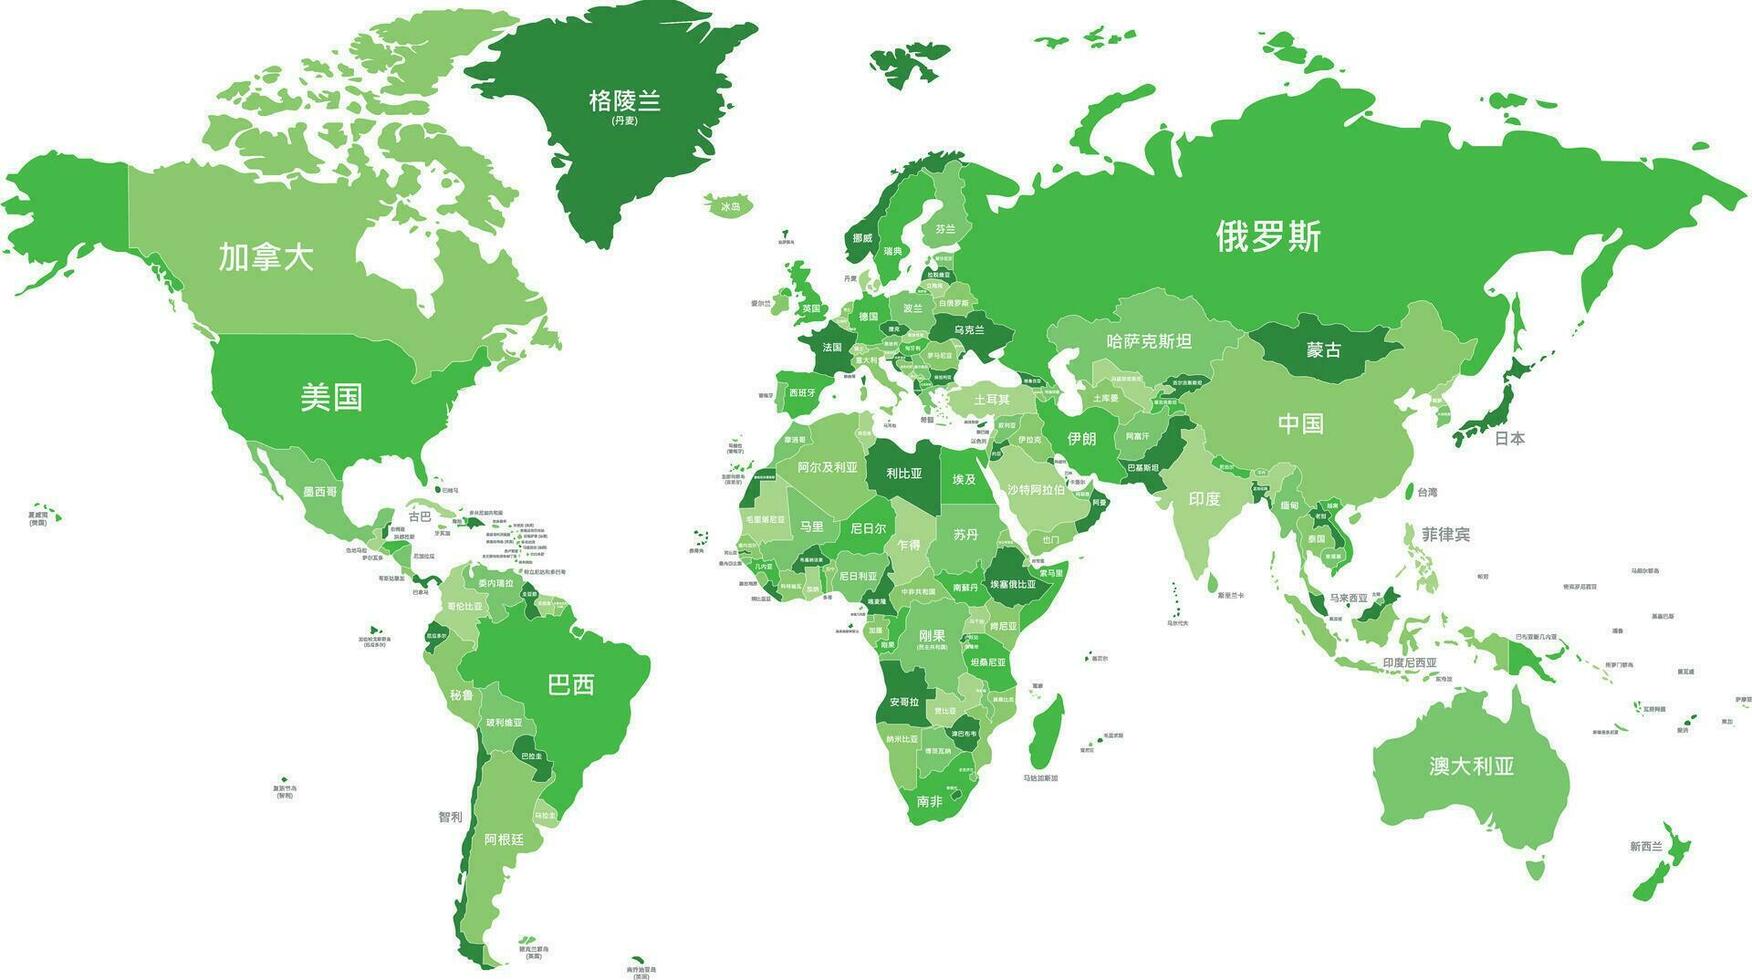 politiek wereld kaart vector illustratie met verschillend tonen van groen voor elk land en land namen in Chinese. bewerkbare en duidelijk gelabeld lagen.